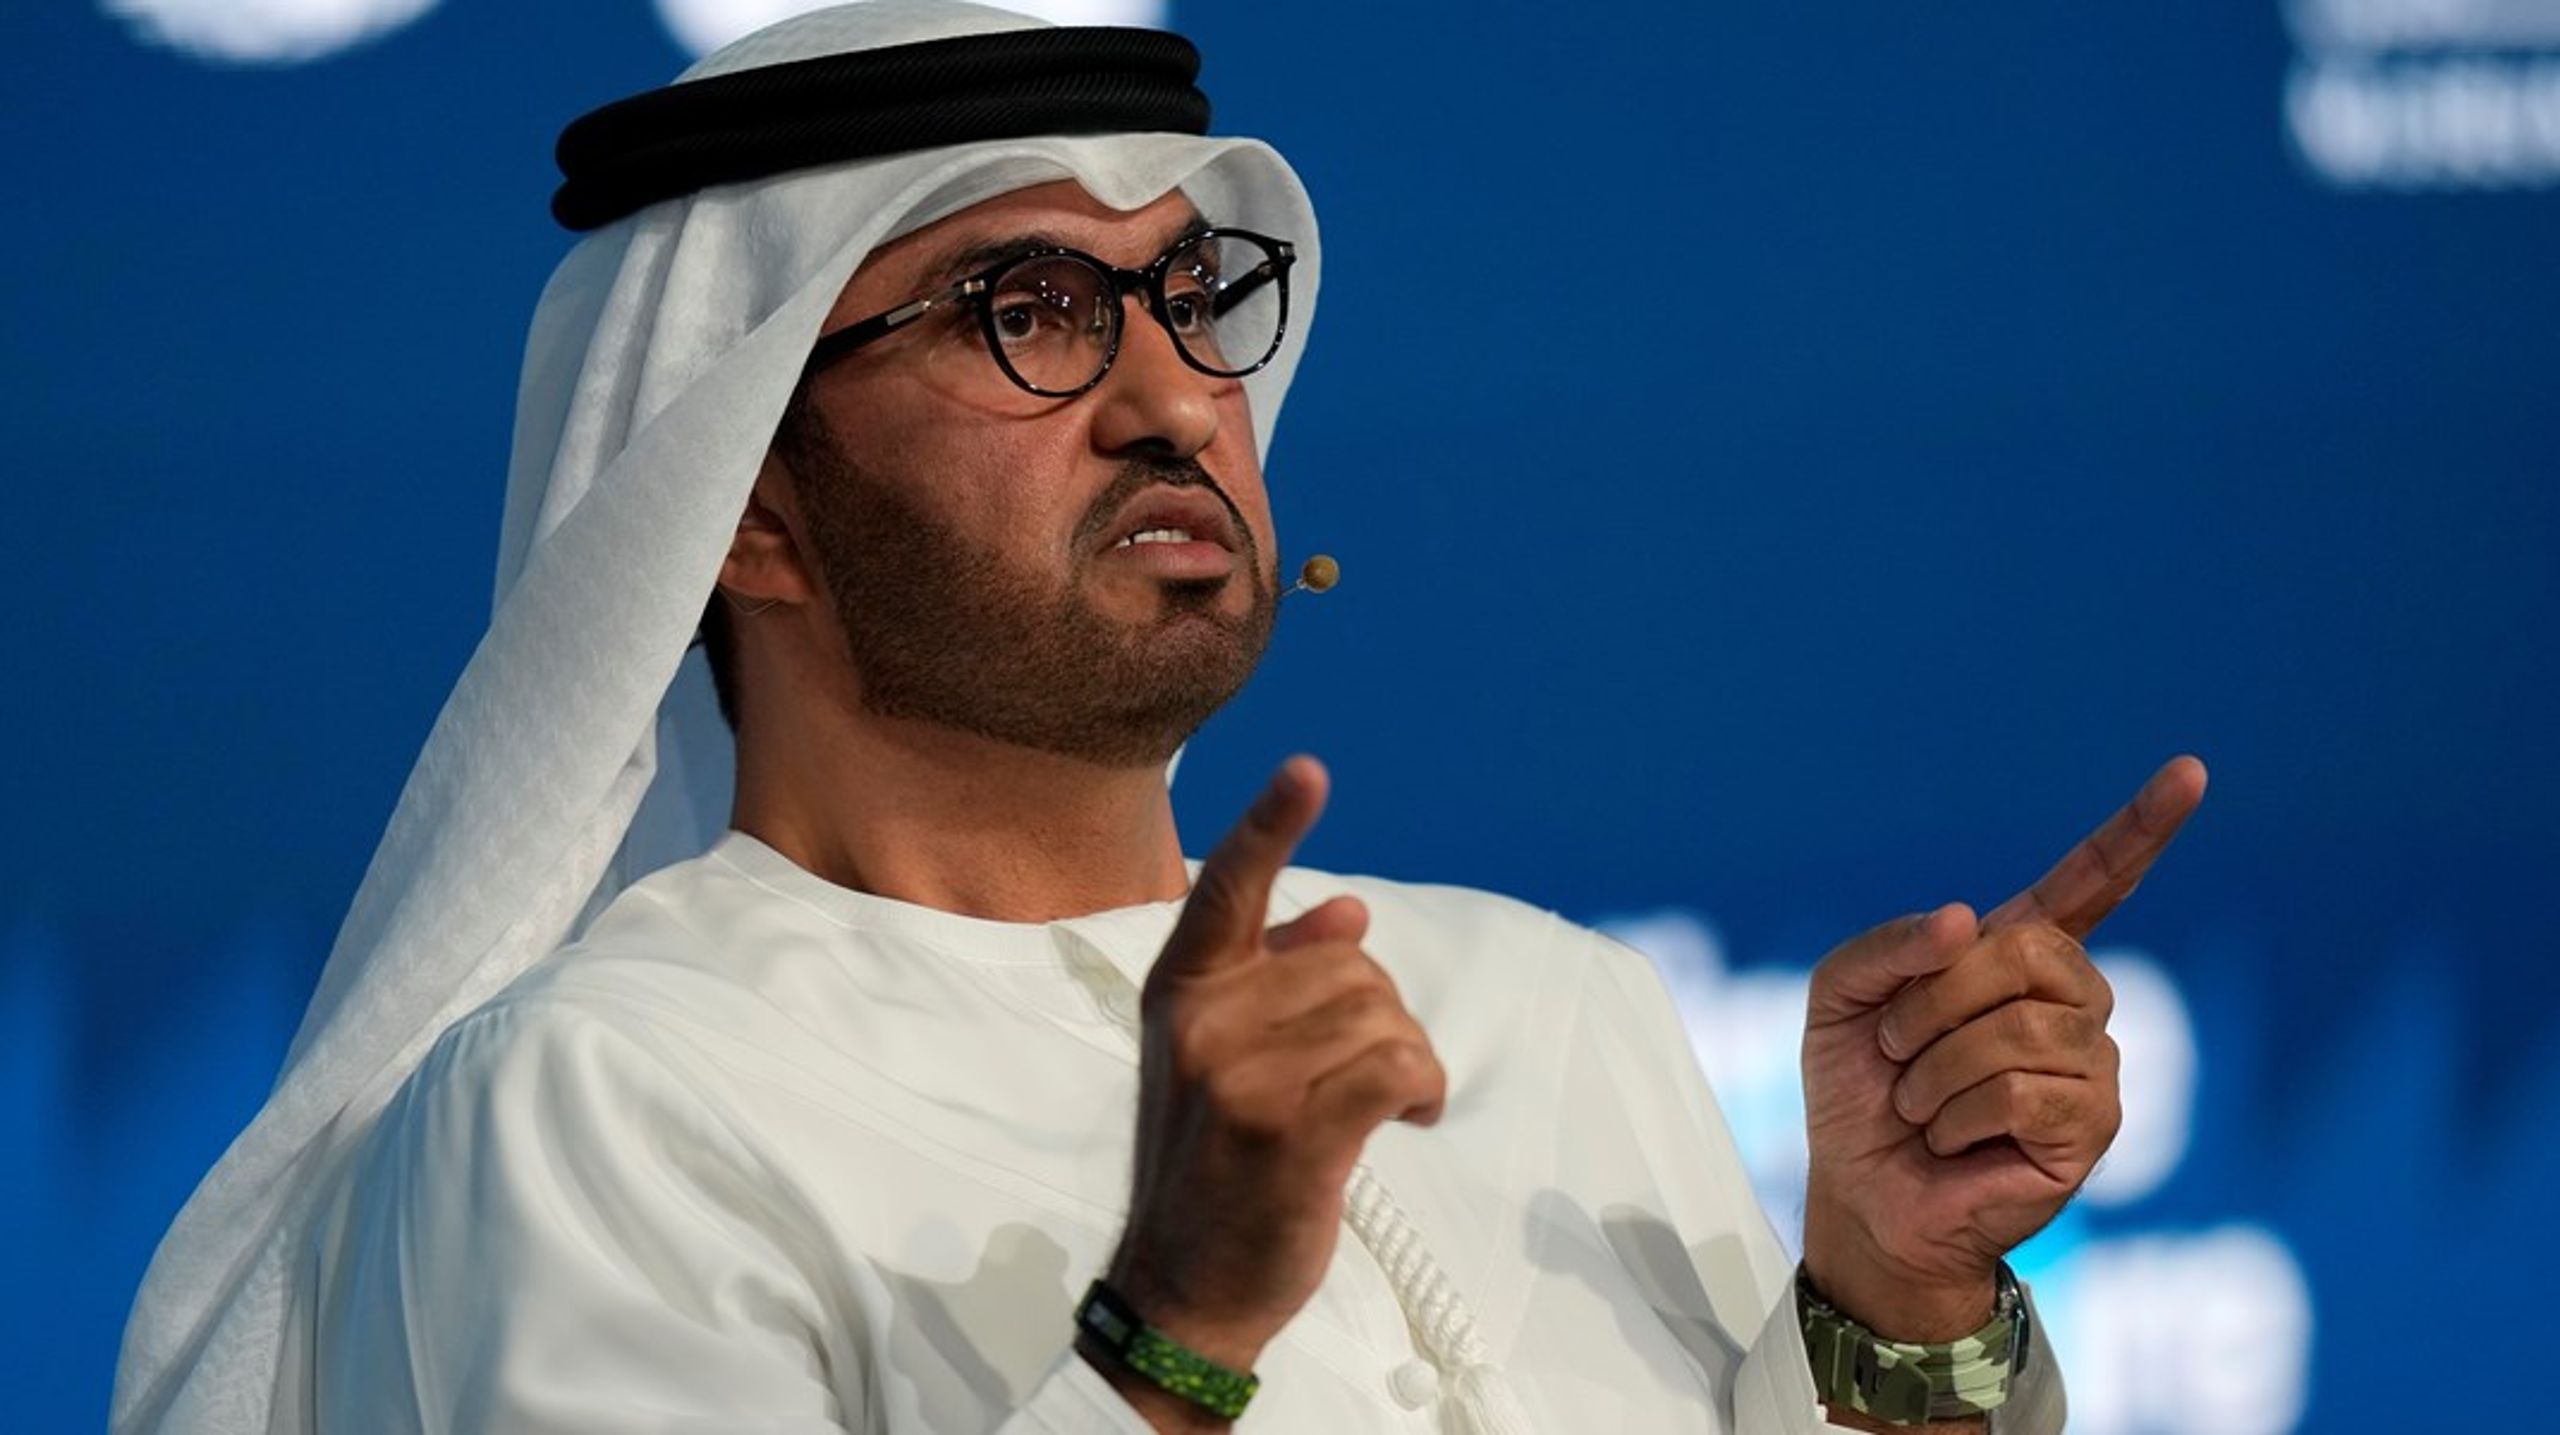 <div><div>Sultan Al Jaber er i kraft av sine mange roller selve symbolet på De Forenede Arabiske Emiraters forhold til klimaforandringene. Han har ansvaret for&nbsp;forhandlingene på det kommende klimatopmøtet, COP28, som foregår i Dubai fra neste uke av.</div></div><div><div><div><ul></ul></div></div></div>